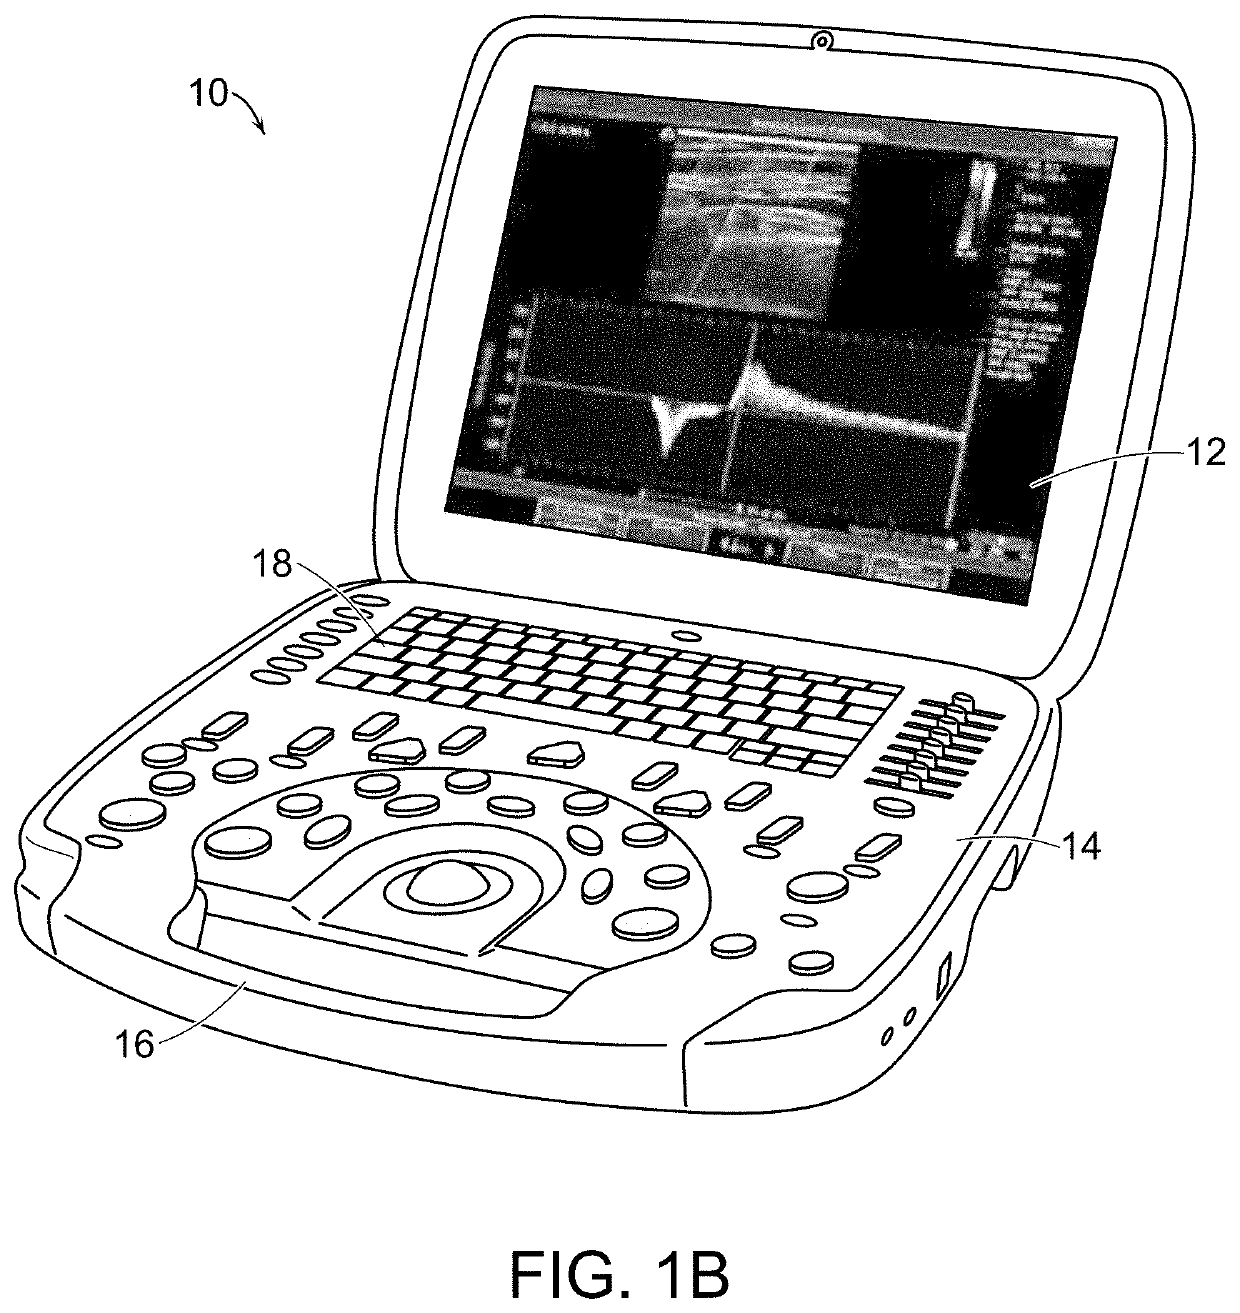 Portable ultrasound system